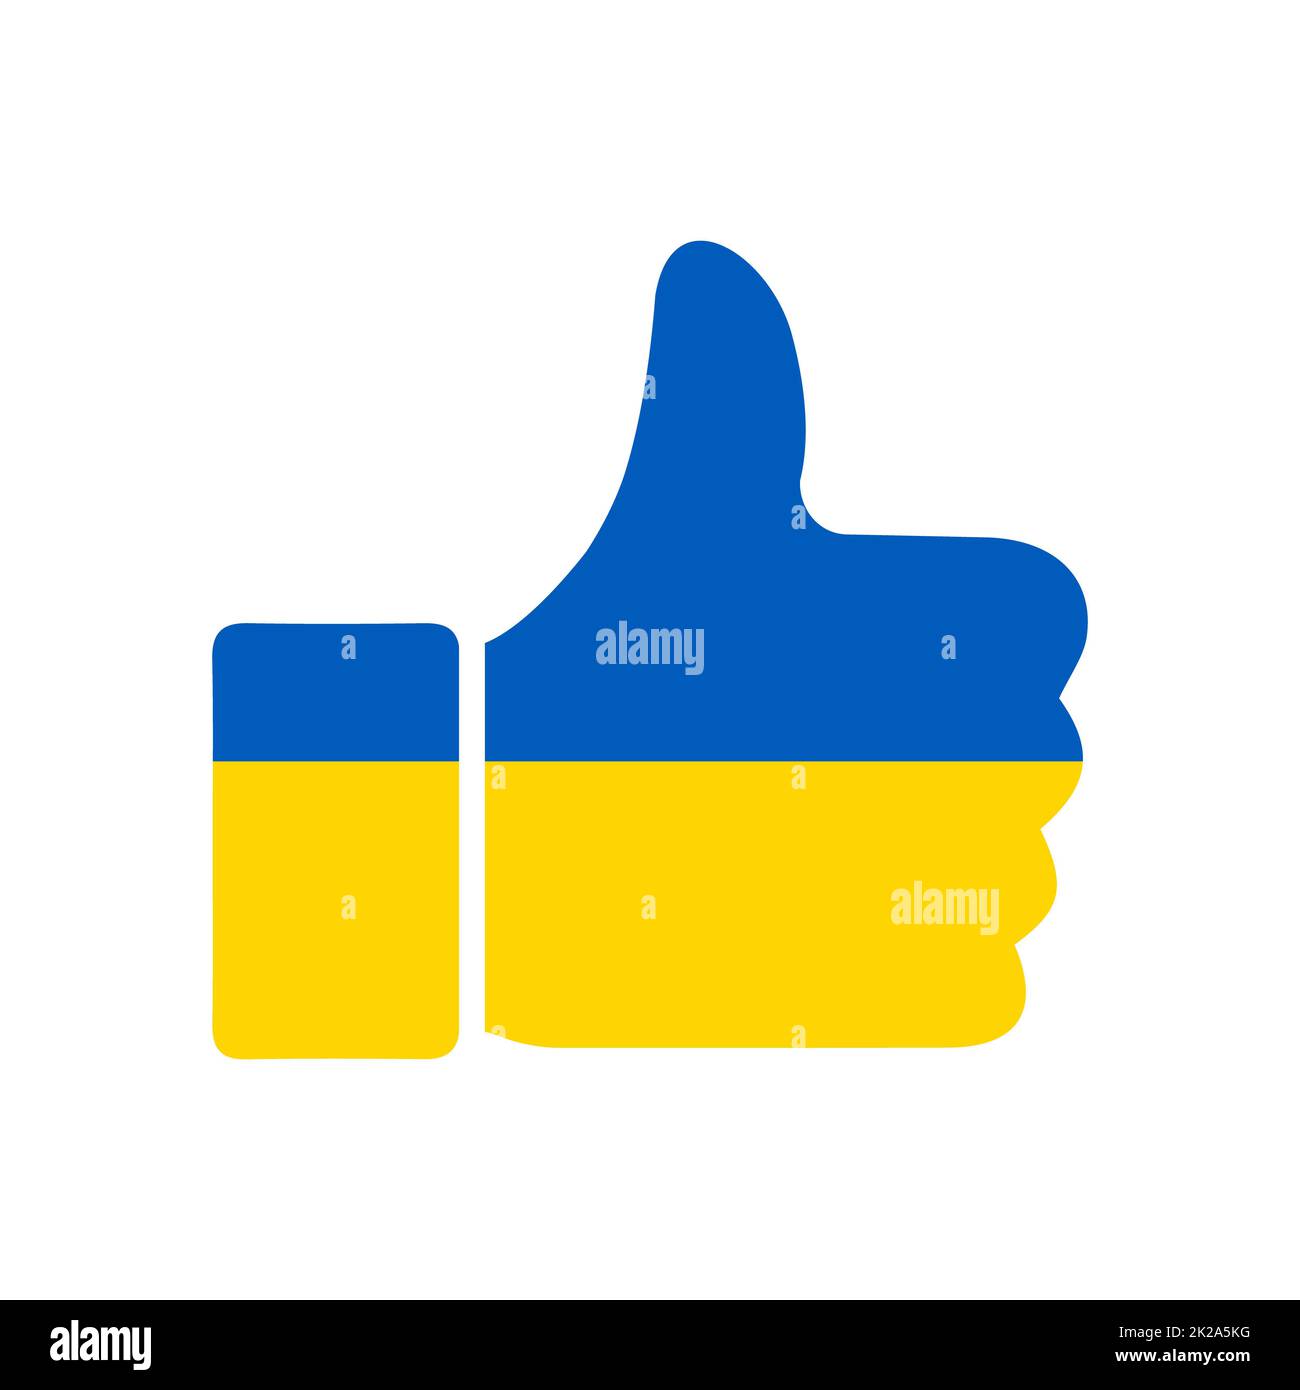 Come l'Ucraina. Icona concettuale in forma di pollici colorati nei colori della bandiera Ucraina, per sostenere il paese contro l'aggressione dalla Russia. Logo per il sostegno nazionale e militare. Nessuna guerra Foto Stock